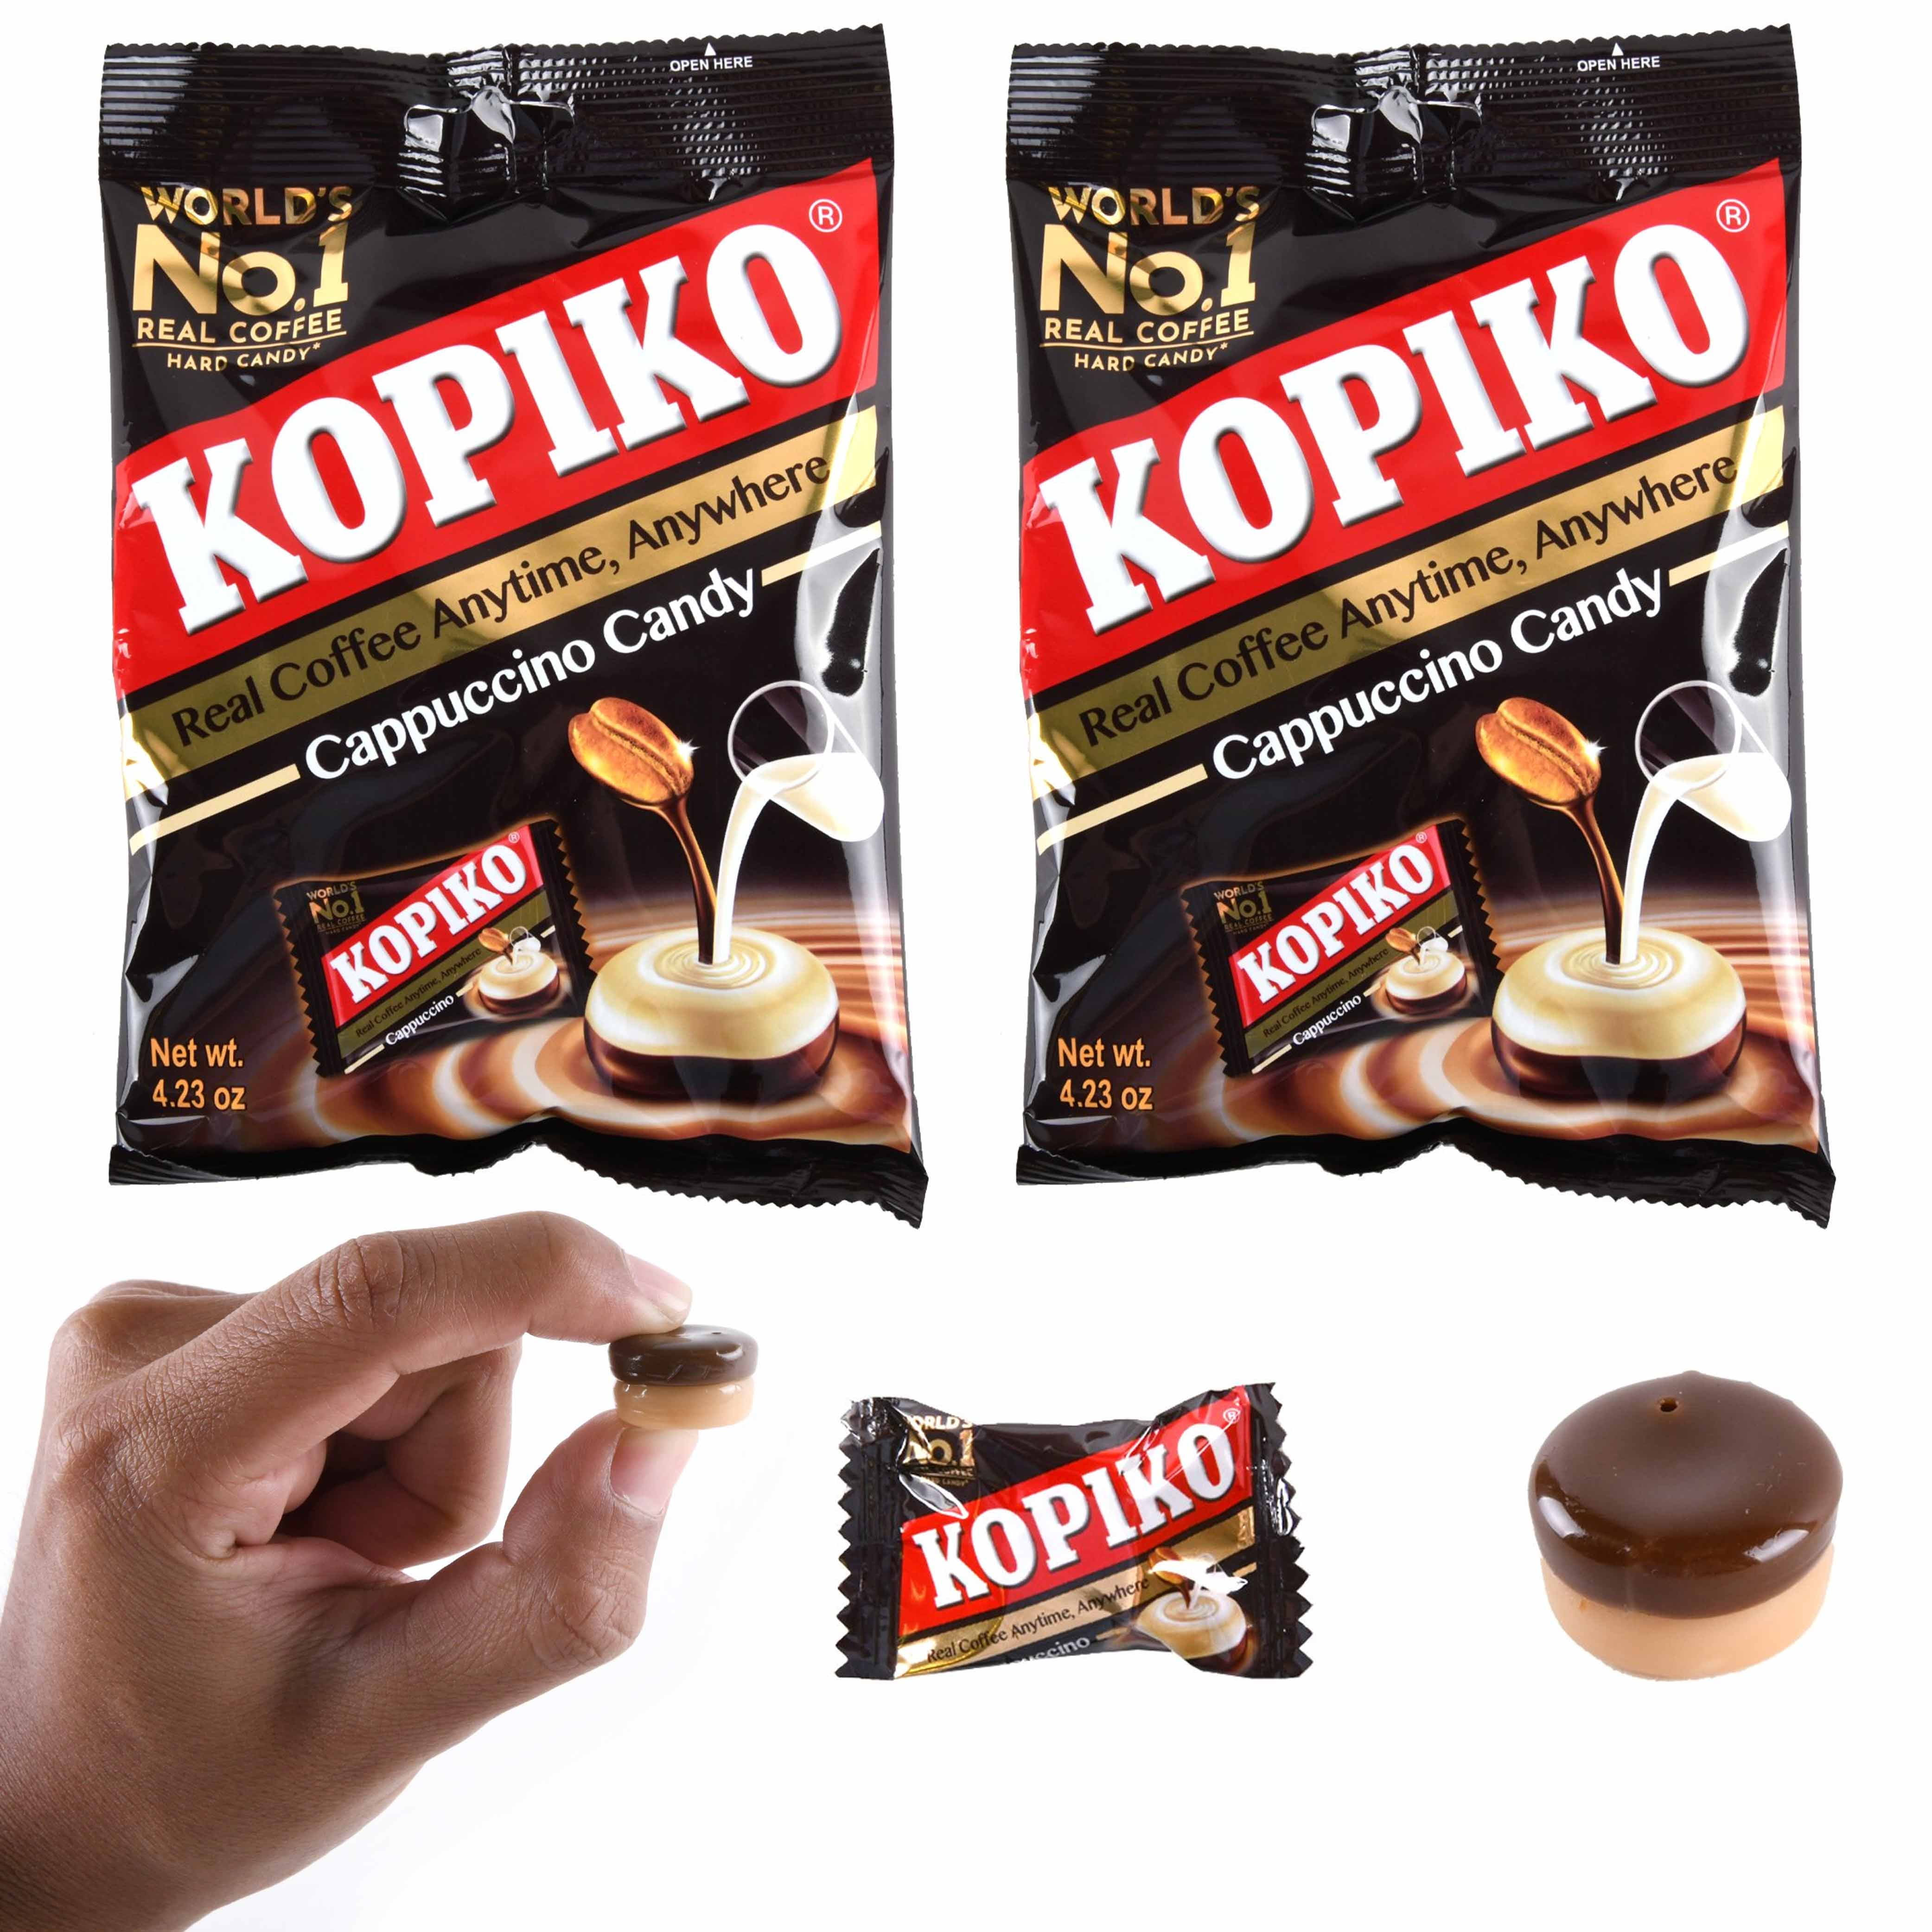 Kopiko Cappuccino Candy – Rio Foods